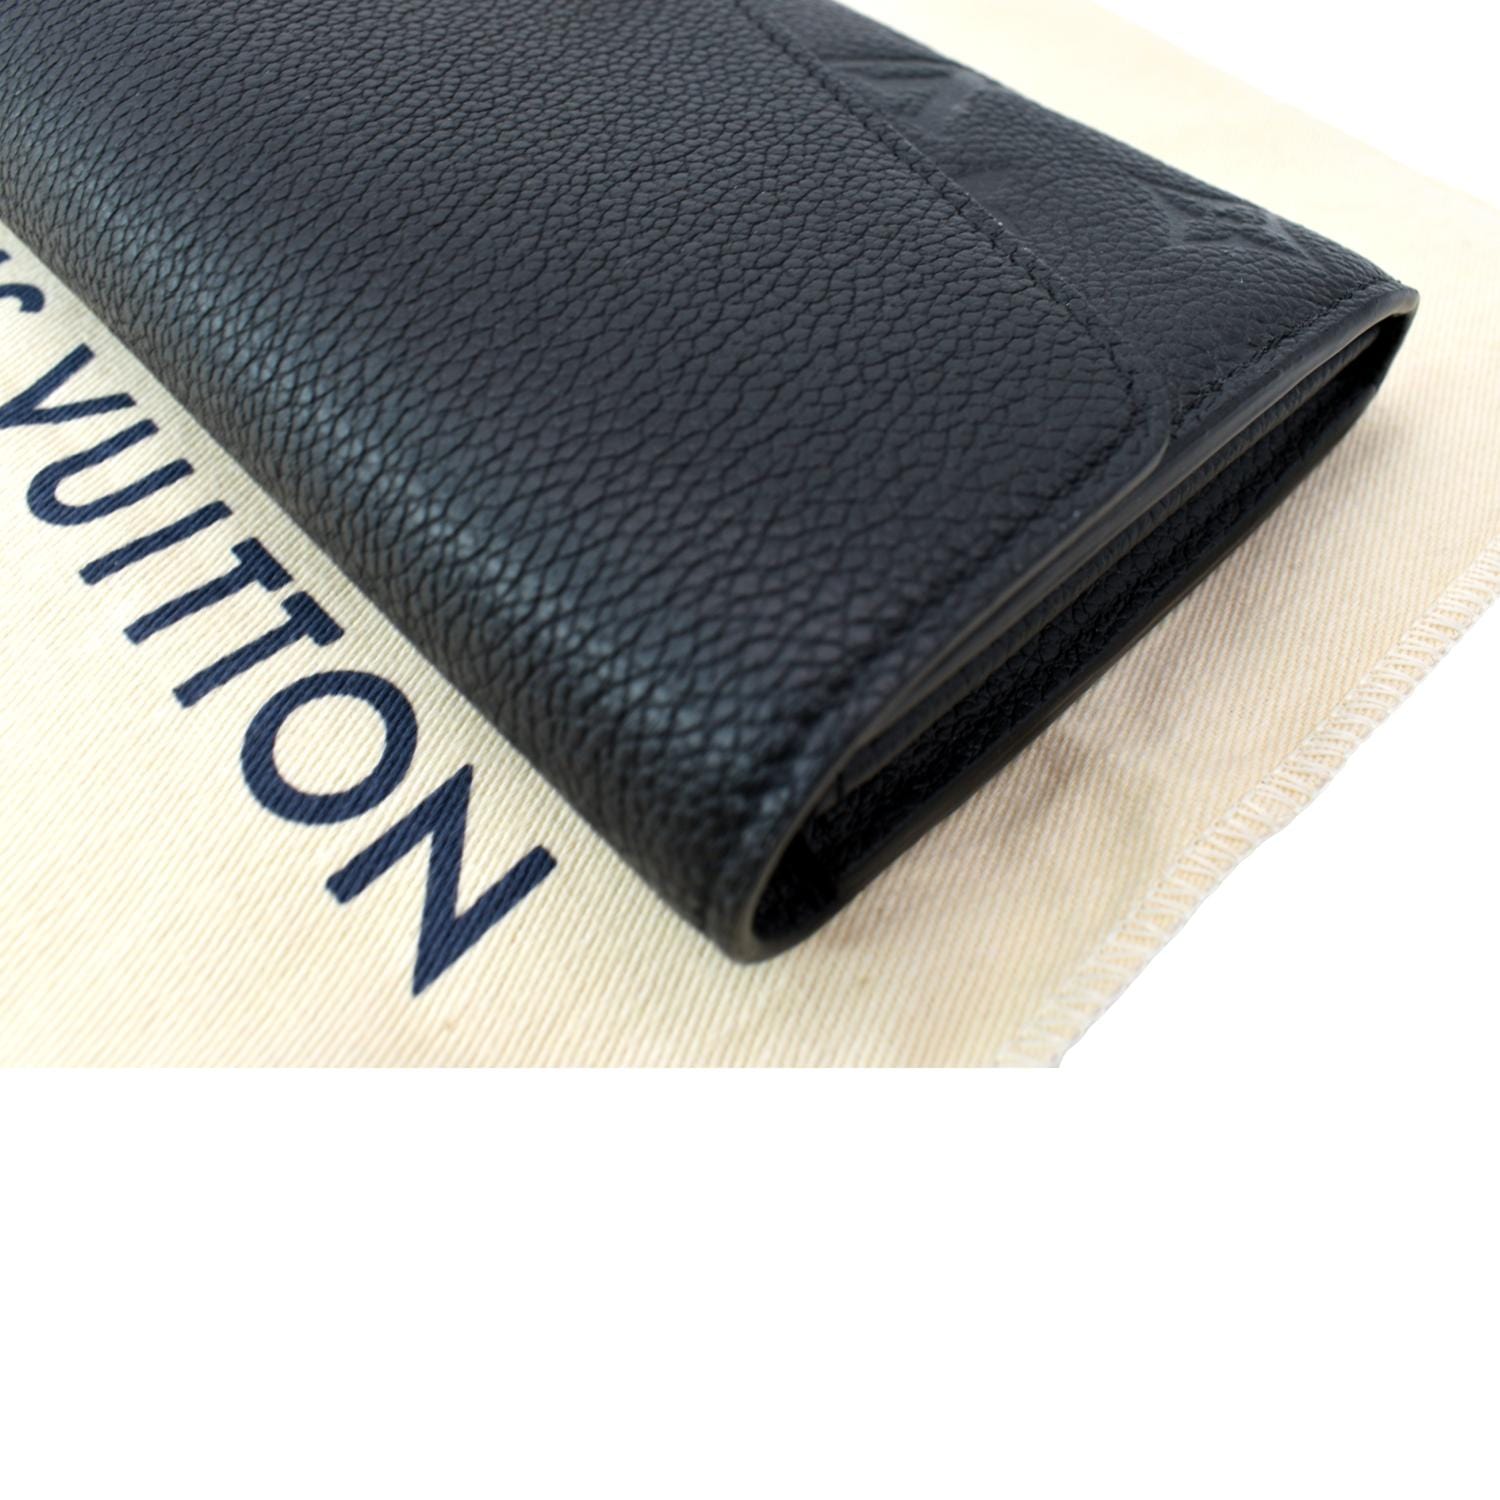 Louis Vuitton Sarah Wallet Monogram Empreinte Leather Black Authentic